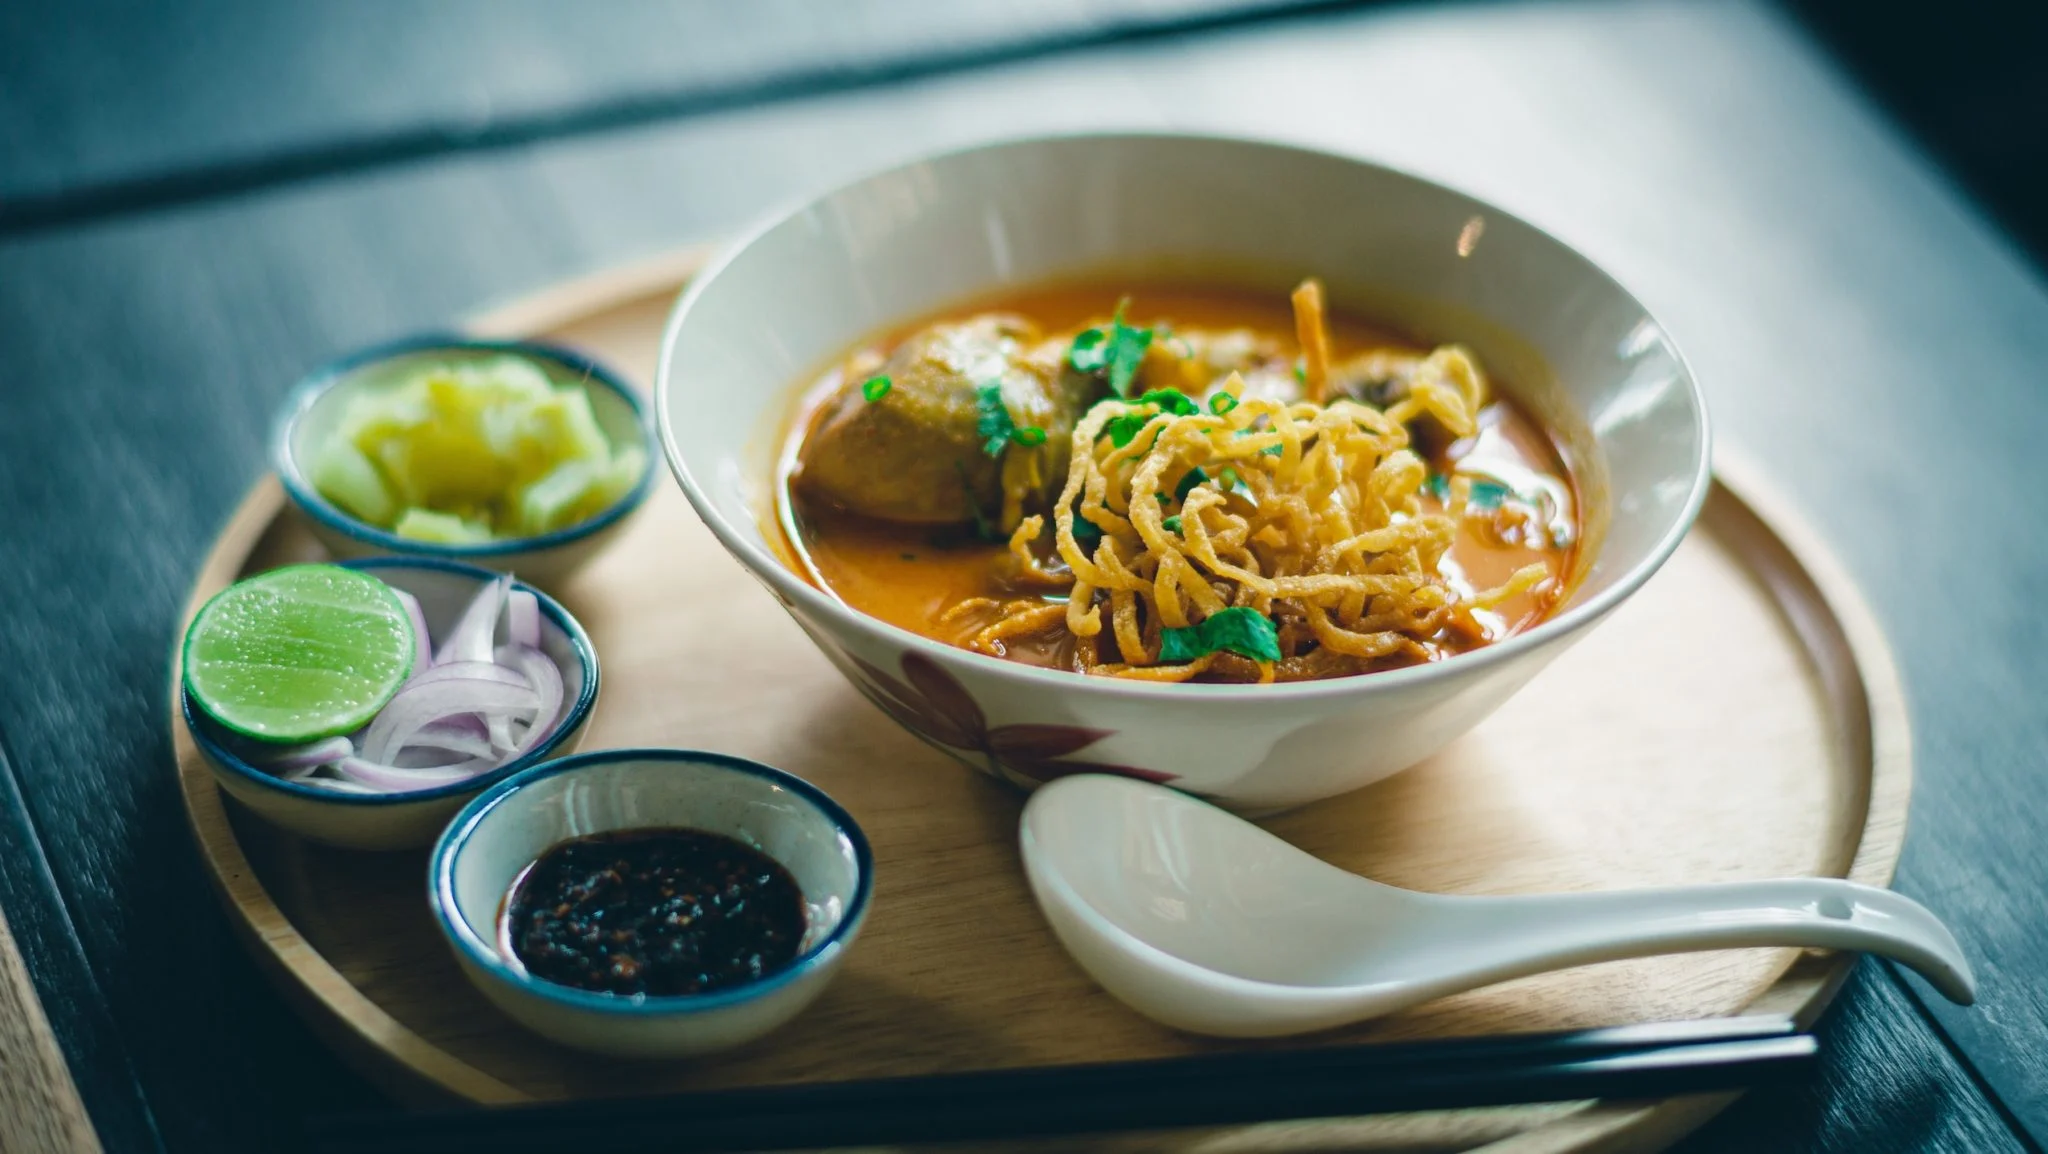 La comida asiática se apoderó de la CDMX en 2019